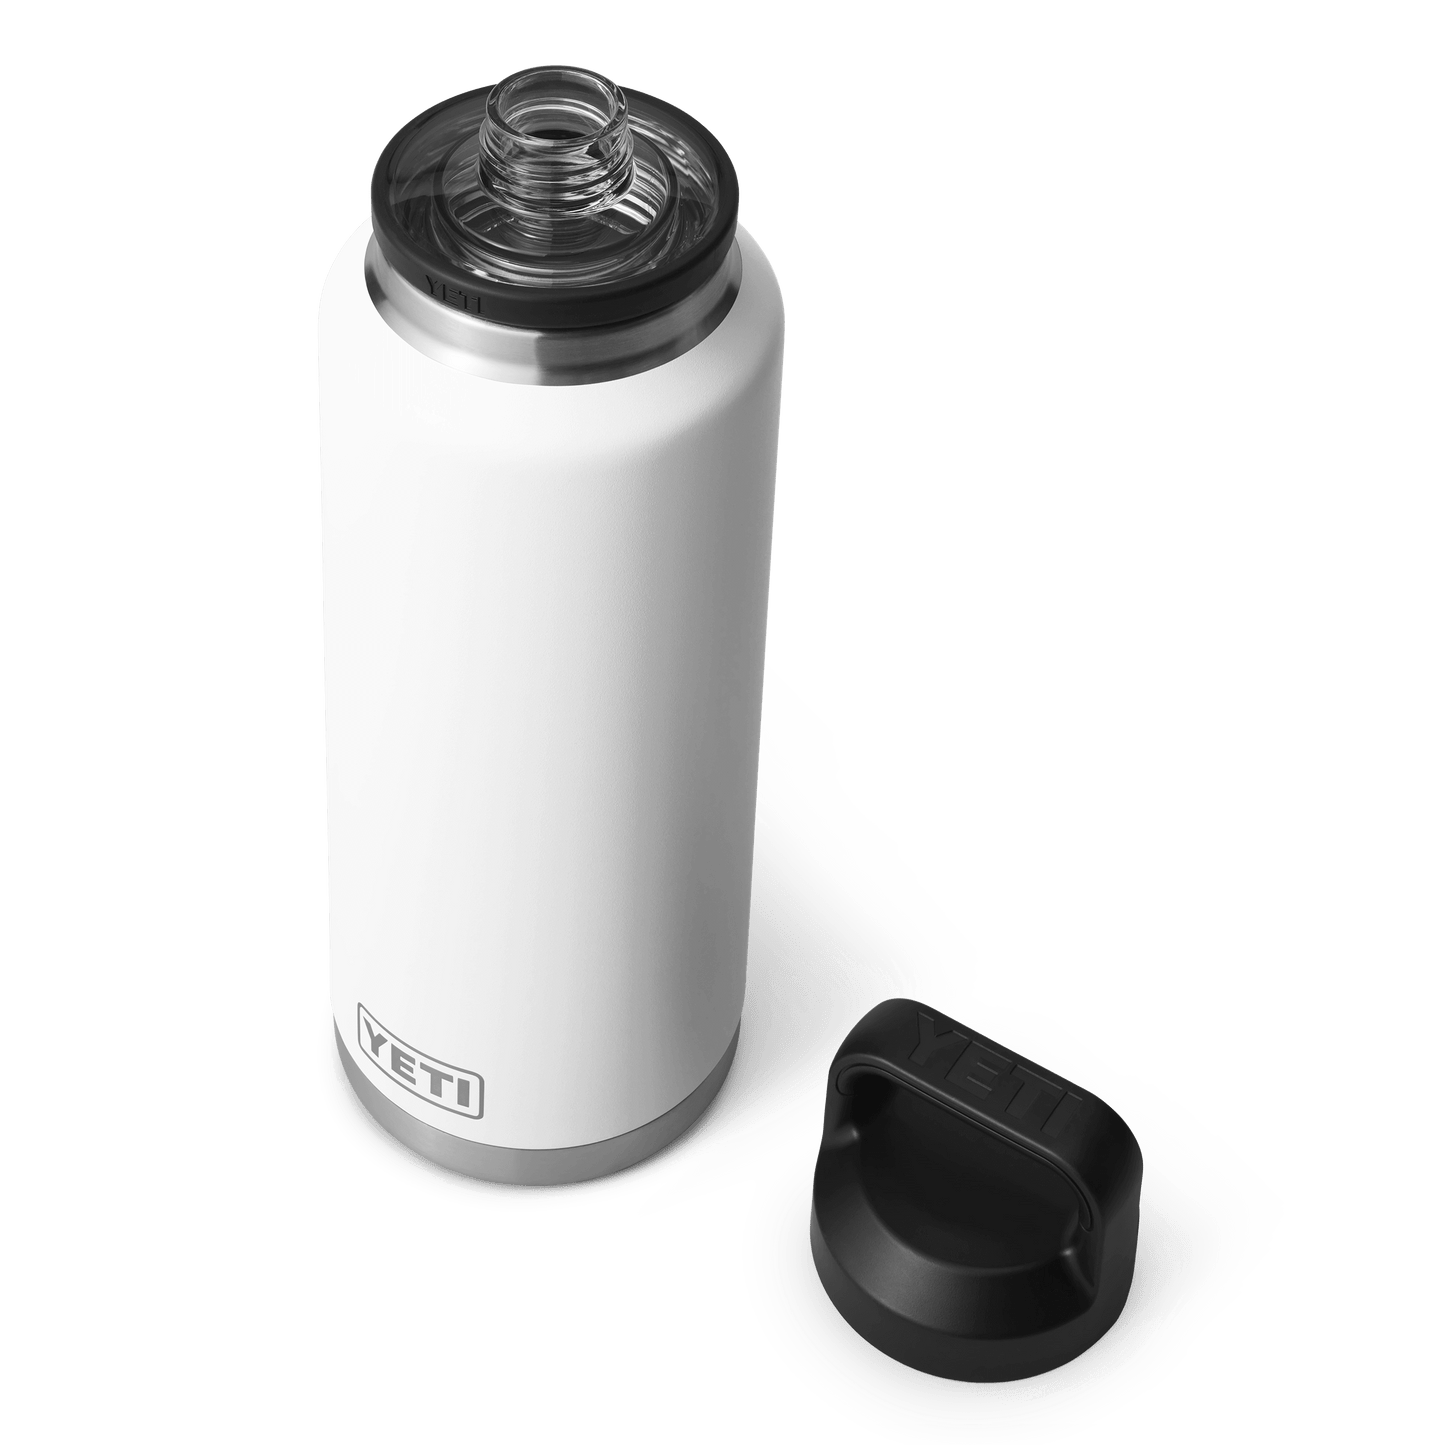 YETI Rambler® 46 oz Flasche (1,4 l) mit Chug-Verschluss Weiss